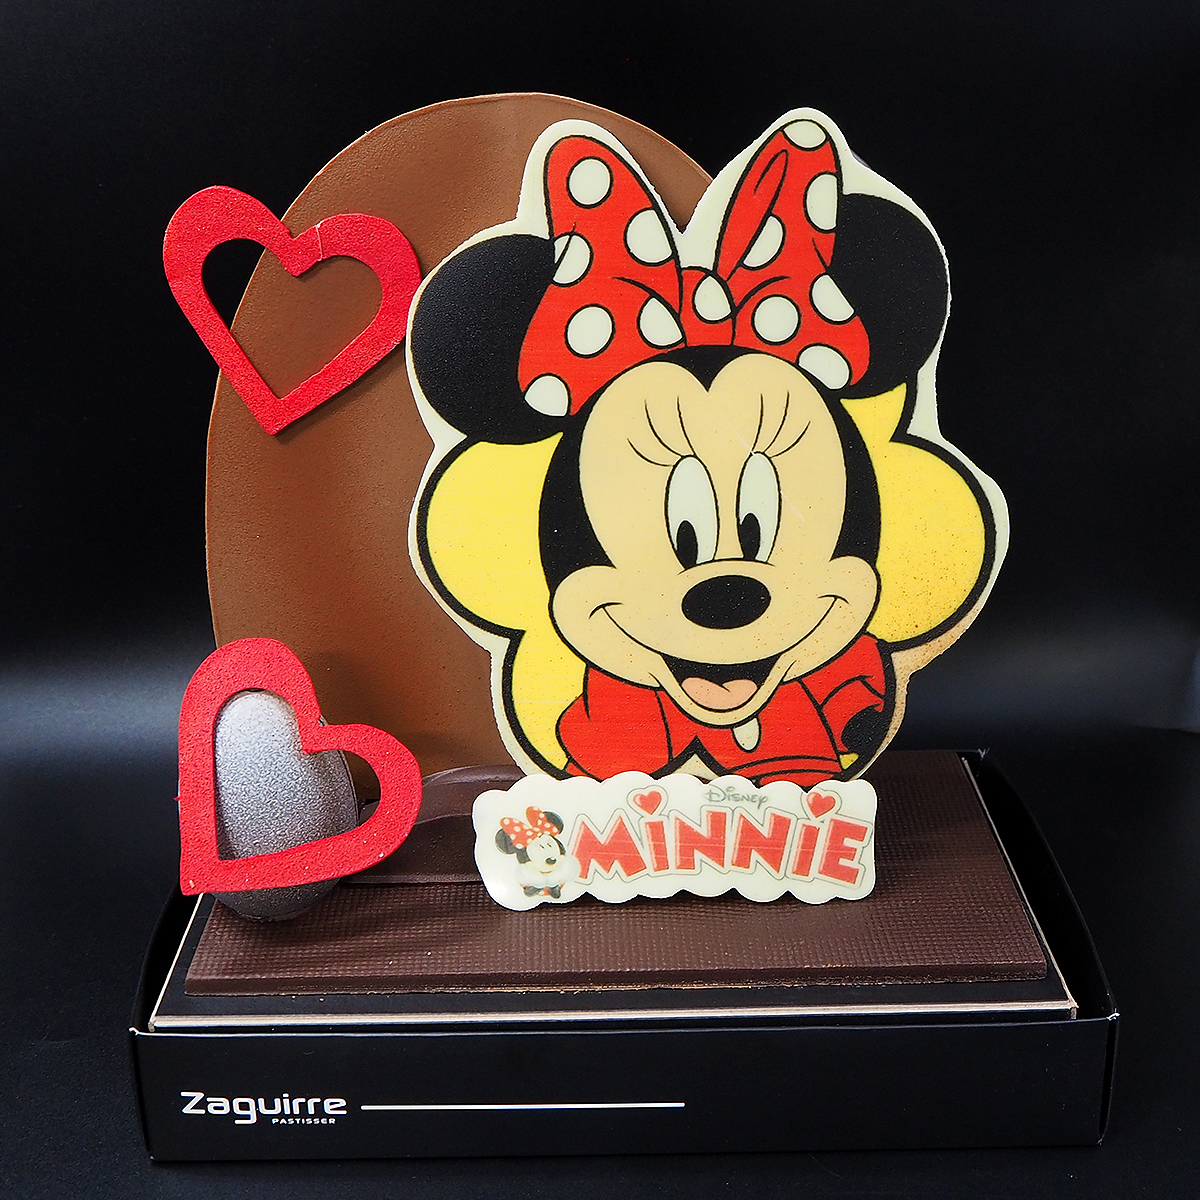 Oude Pasqua de xocolata amb la Minnie Mouse elaborada per Zaguirre Pastisser.